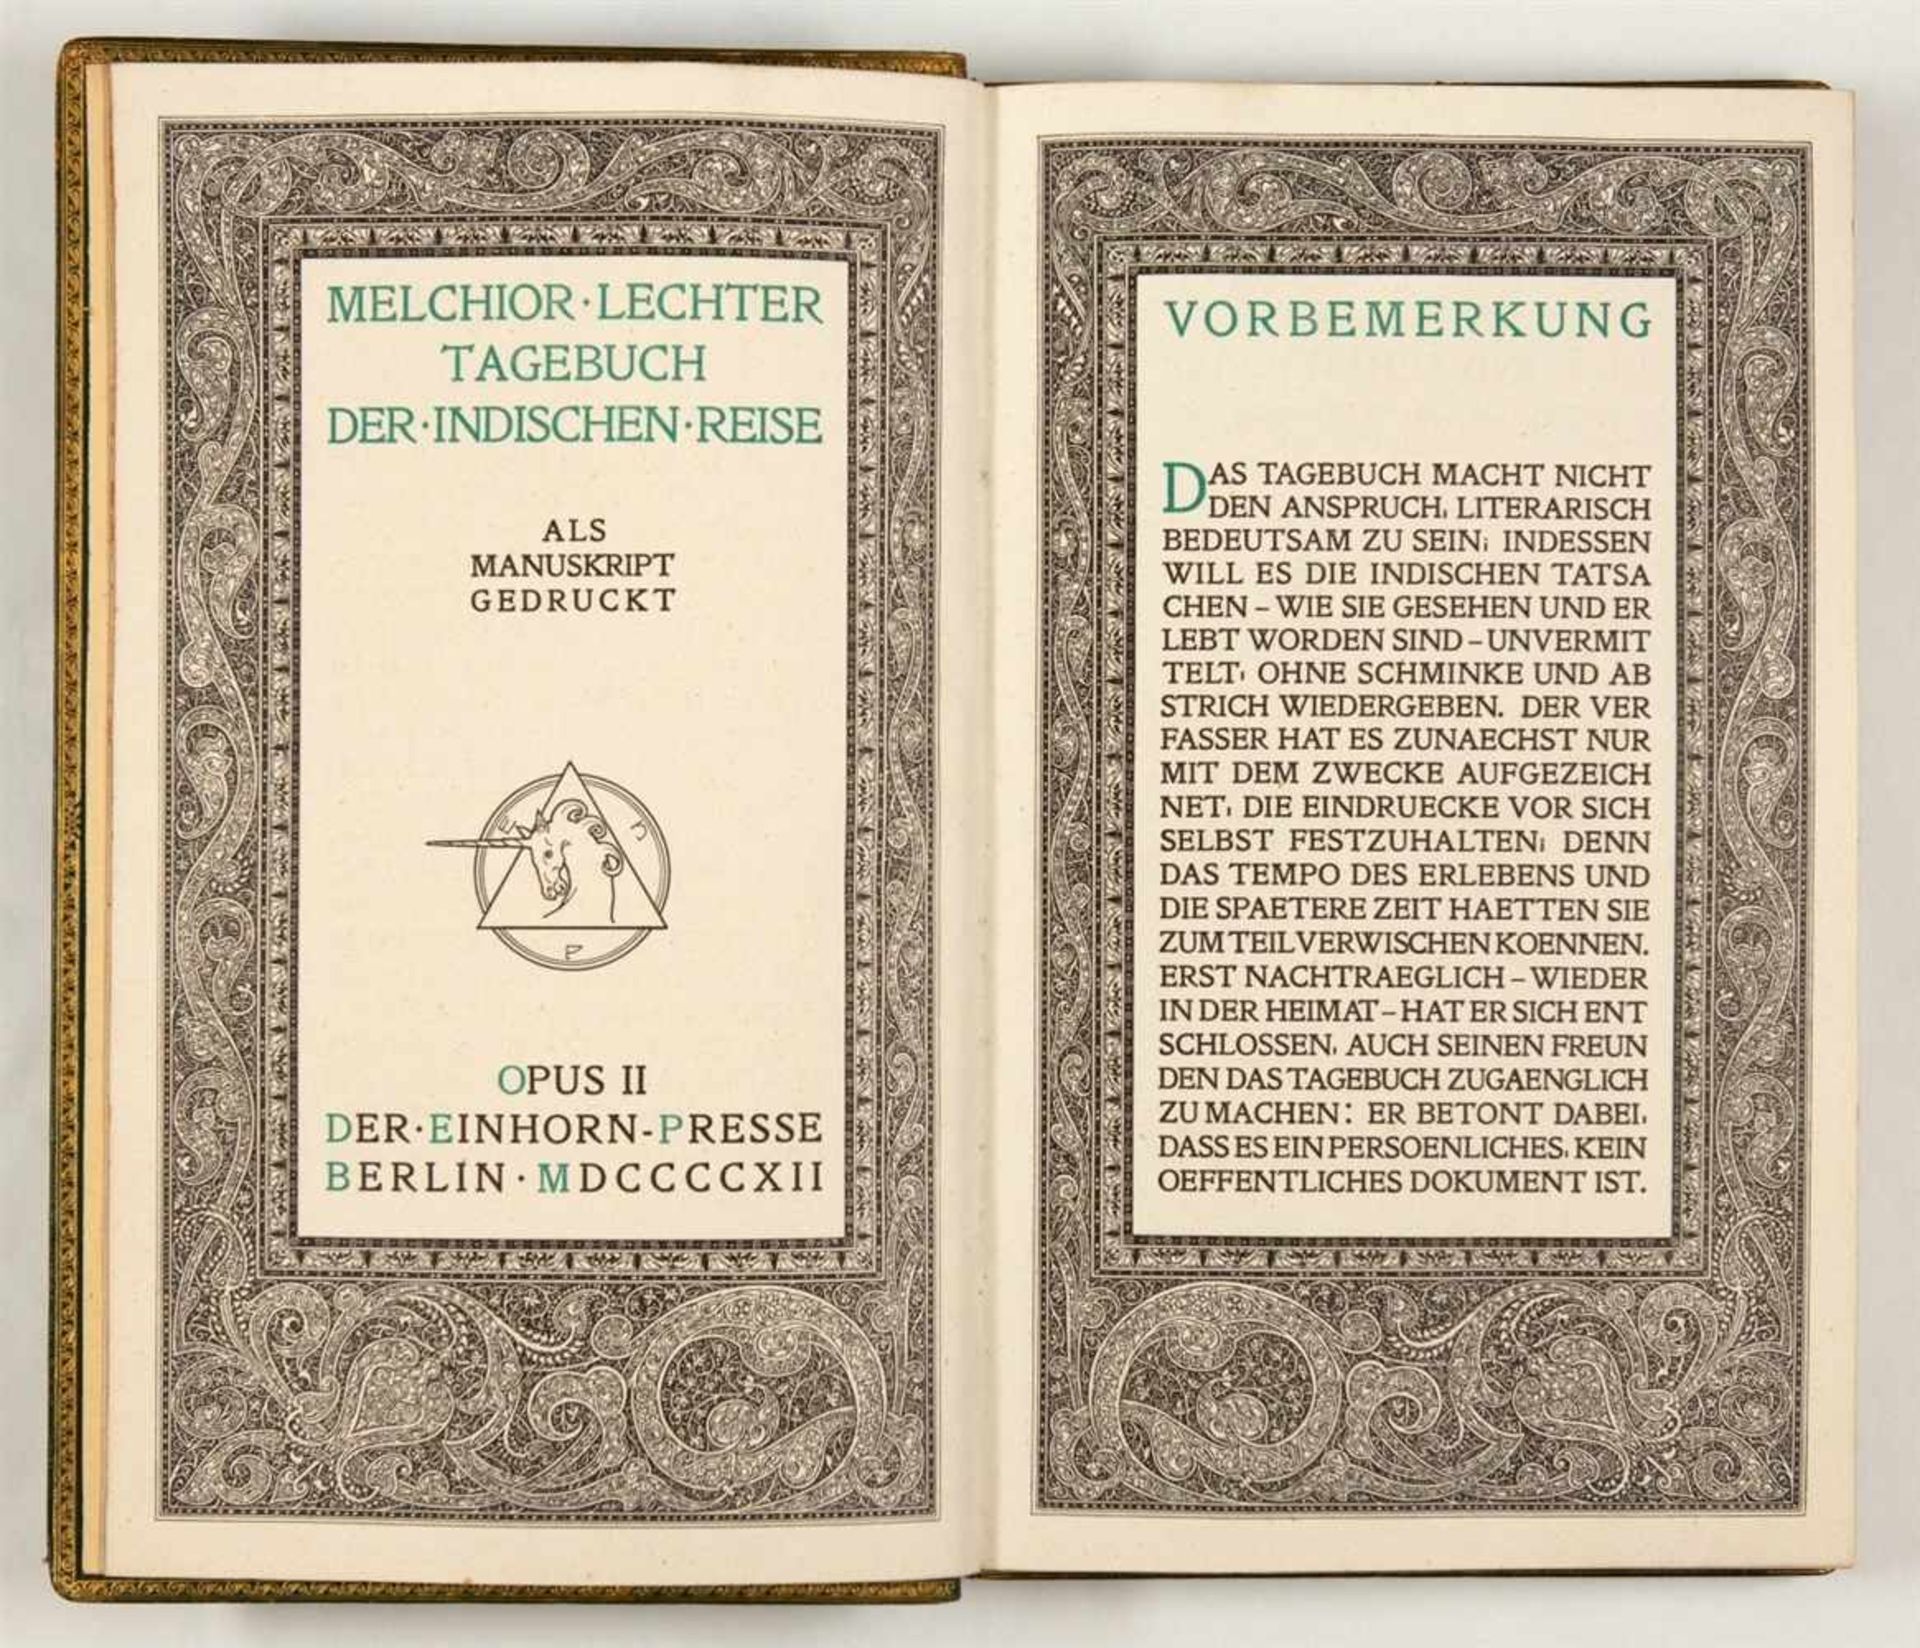 LECHTER, MELCHIORTagebuch der indischen Reise. Als Manuskript gedruckt. Berlin: Einhorn-Presse 1912.